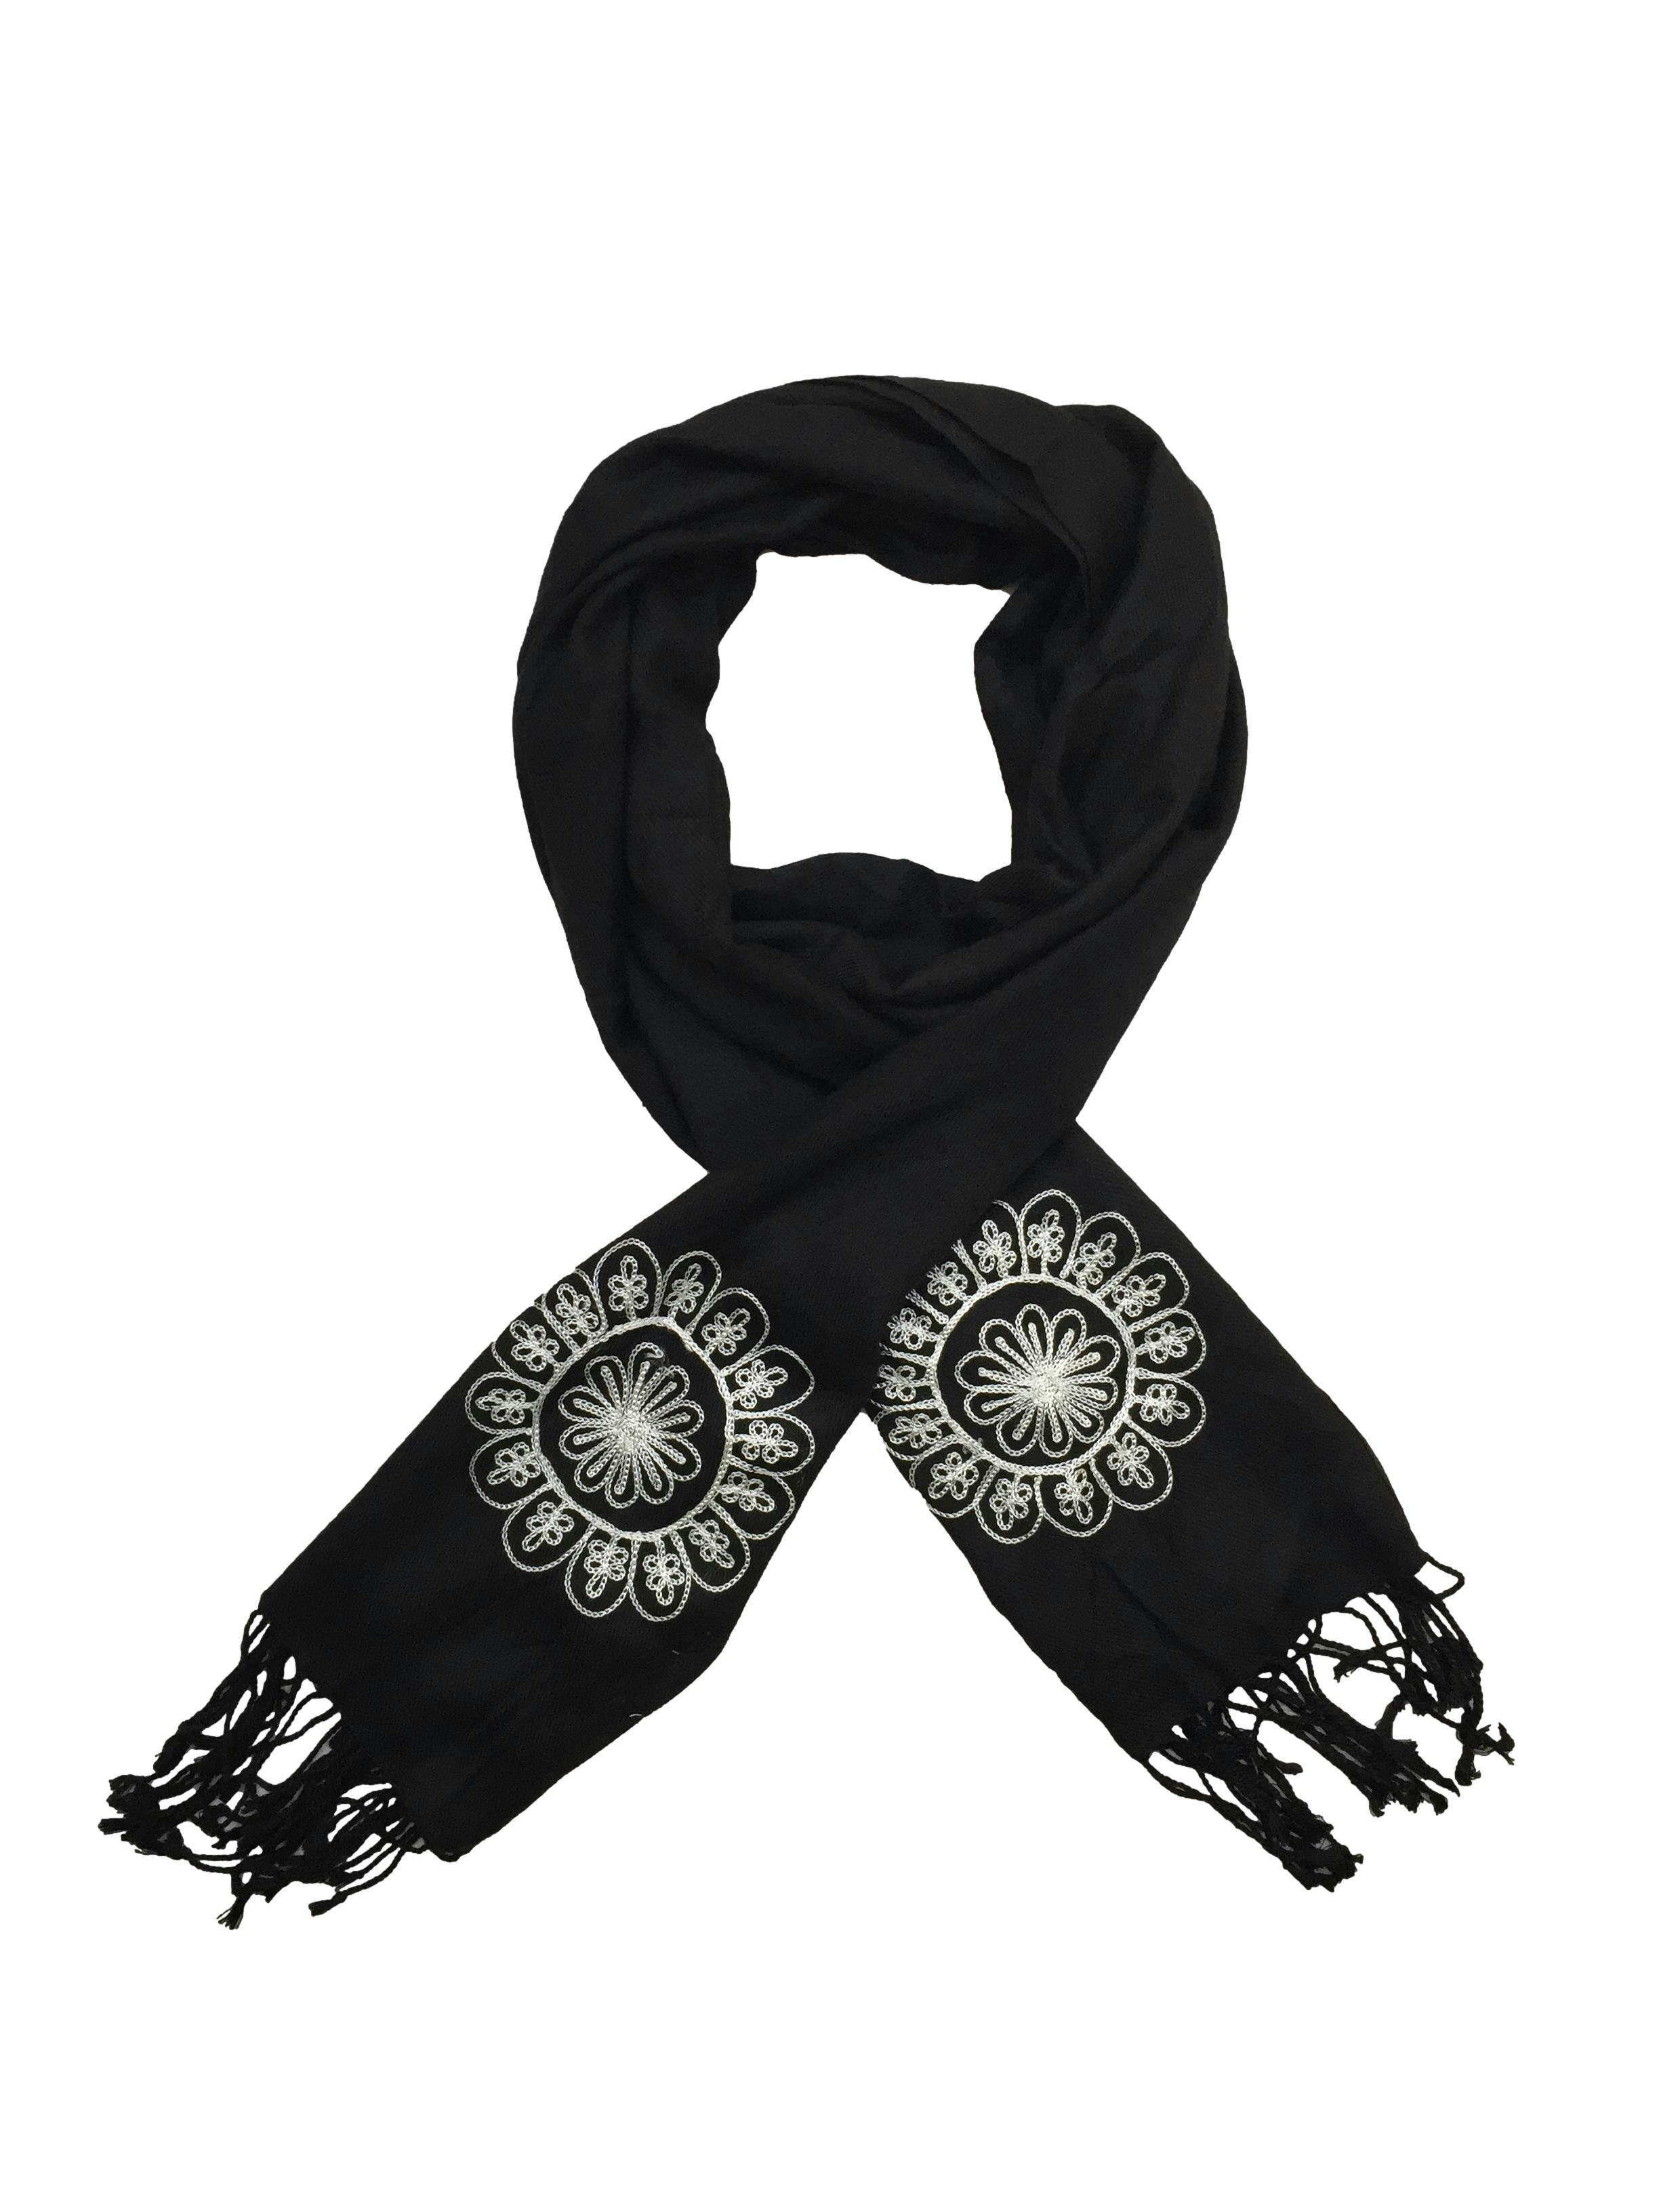 Bufanda Navigata negra con bordados de flores en extremos y flecos en basta, material viscosa fresca. Medidas 185 x 50 cm